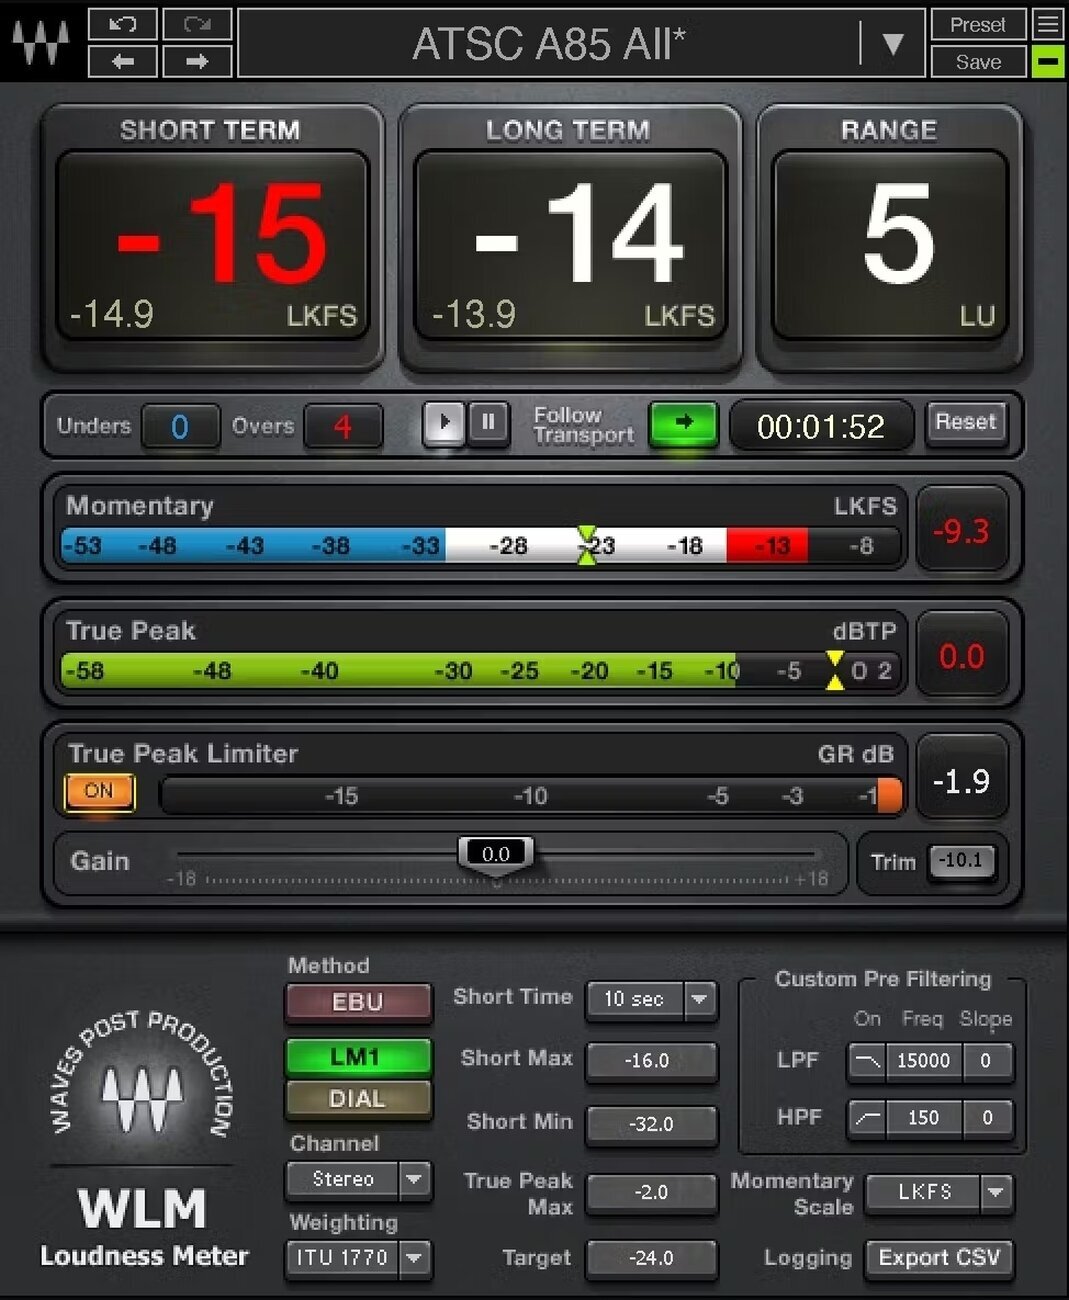 Plug-in de efeitos Waves WLM Plus Loudness Meter (Produto digital)